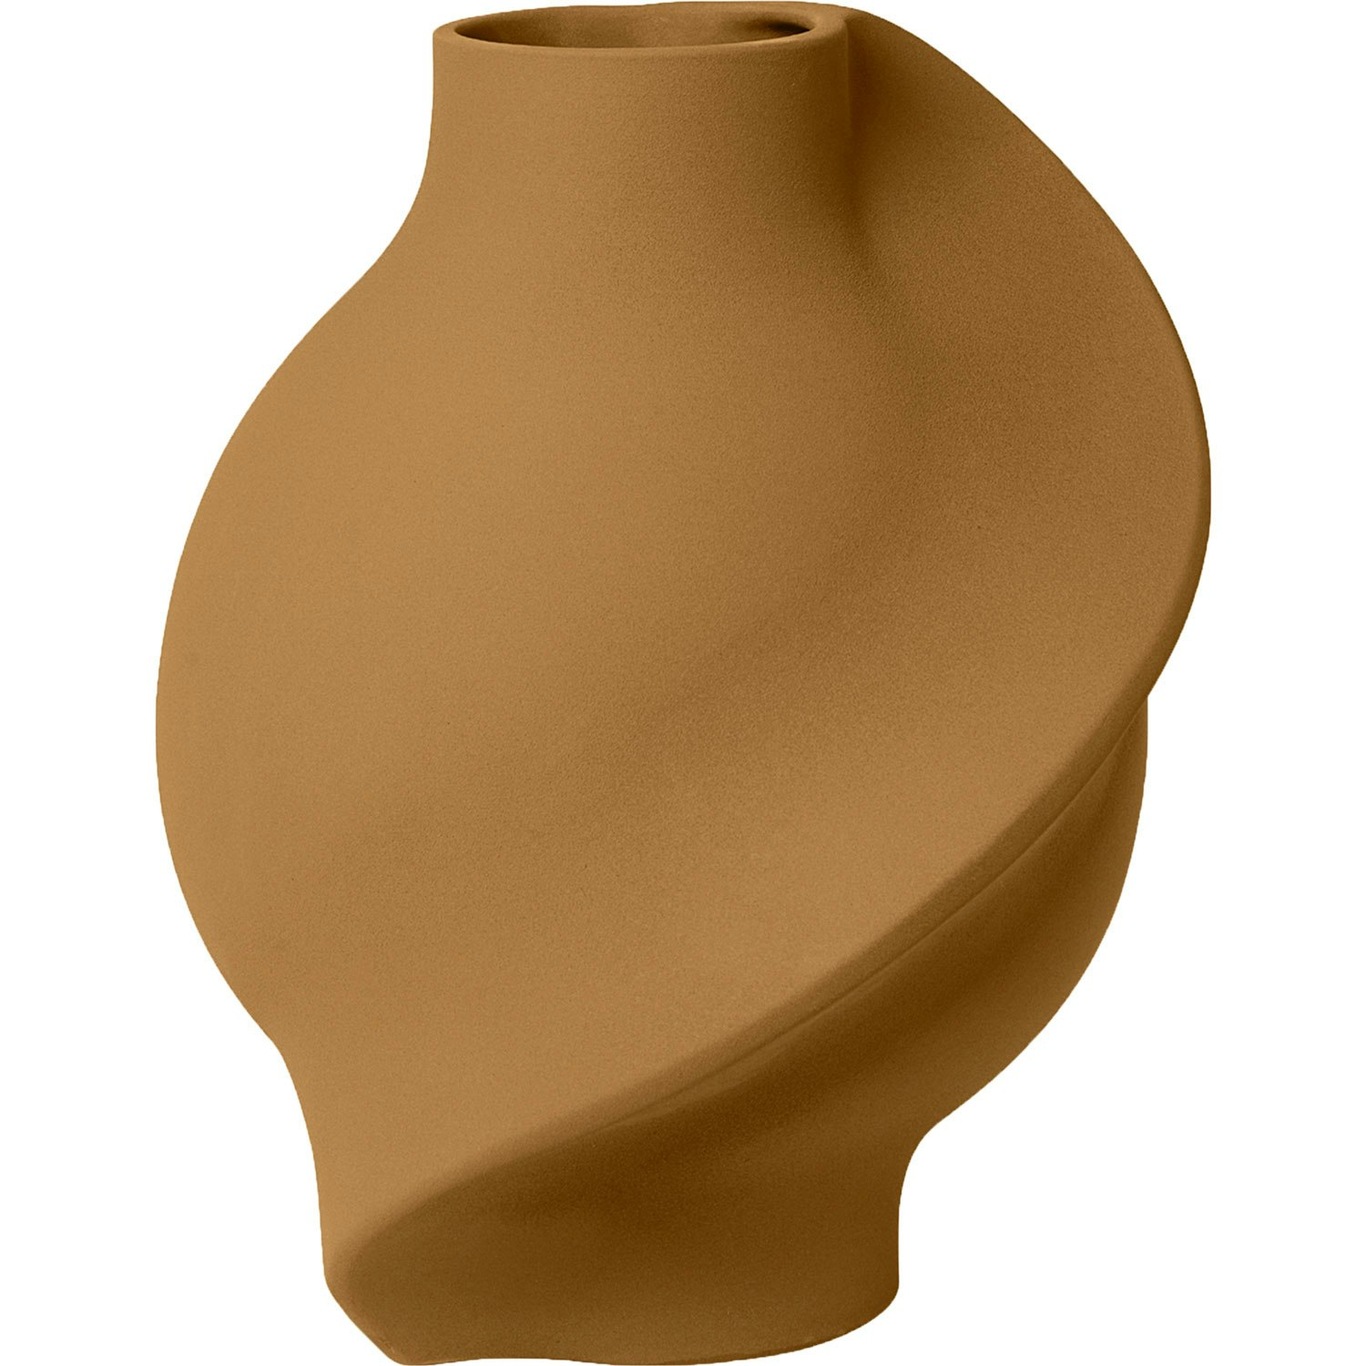 Pirout 02 Vas 42 cm, Sanded Ocker